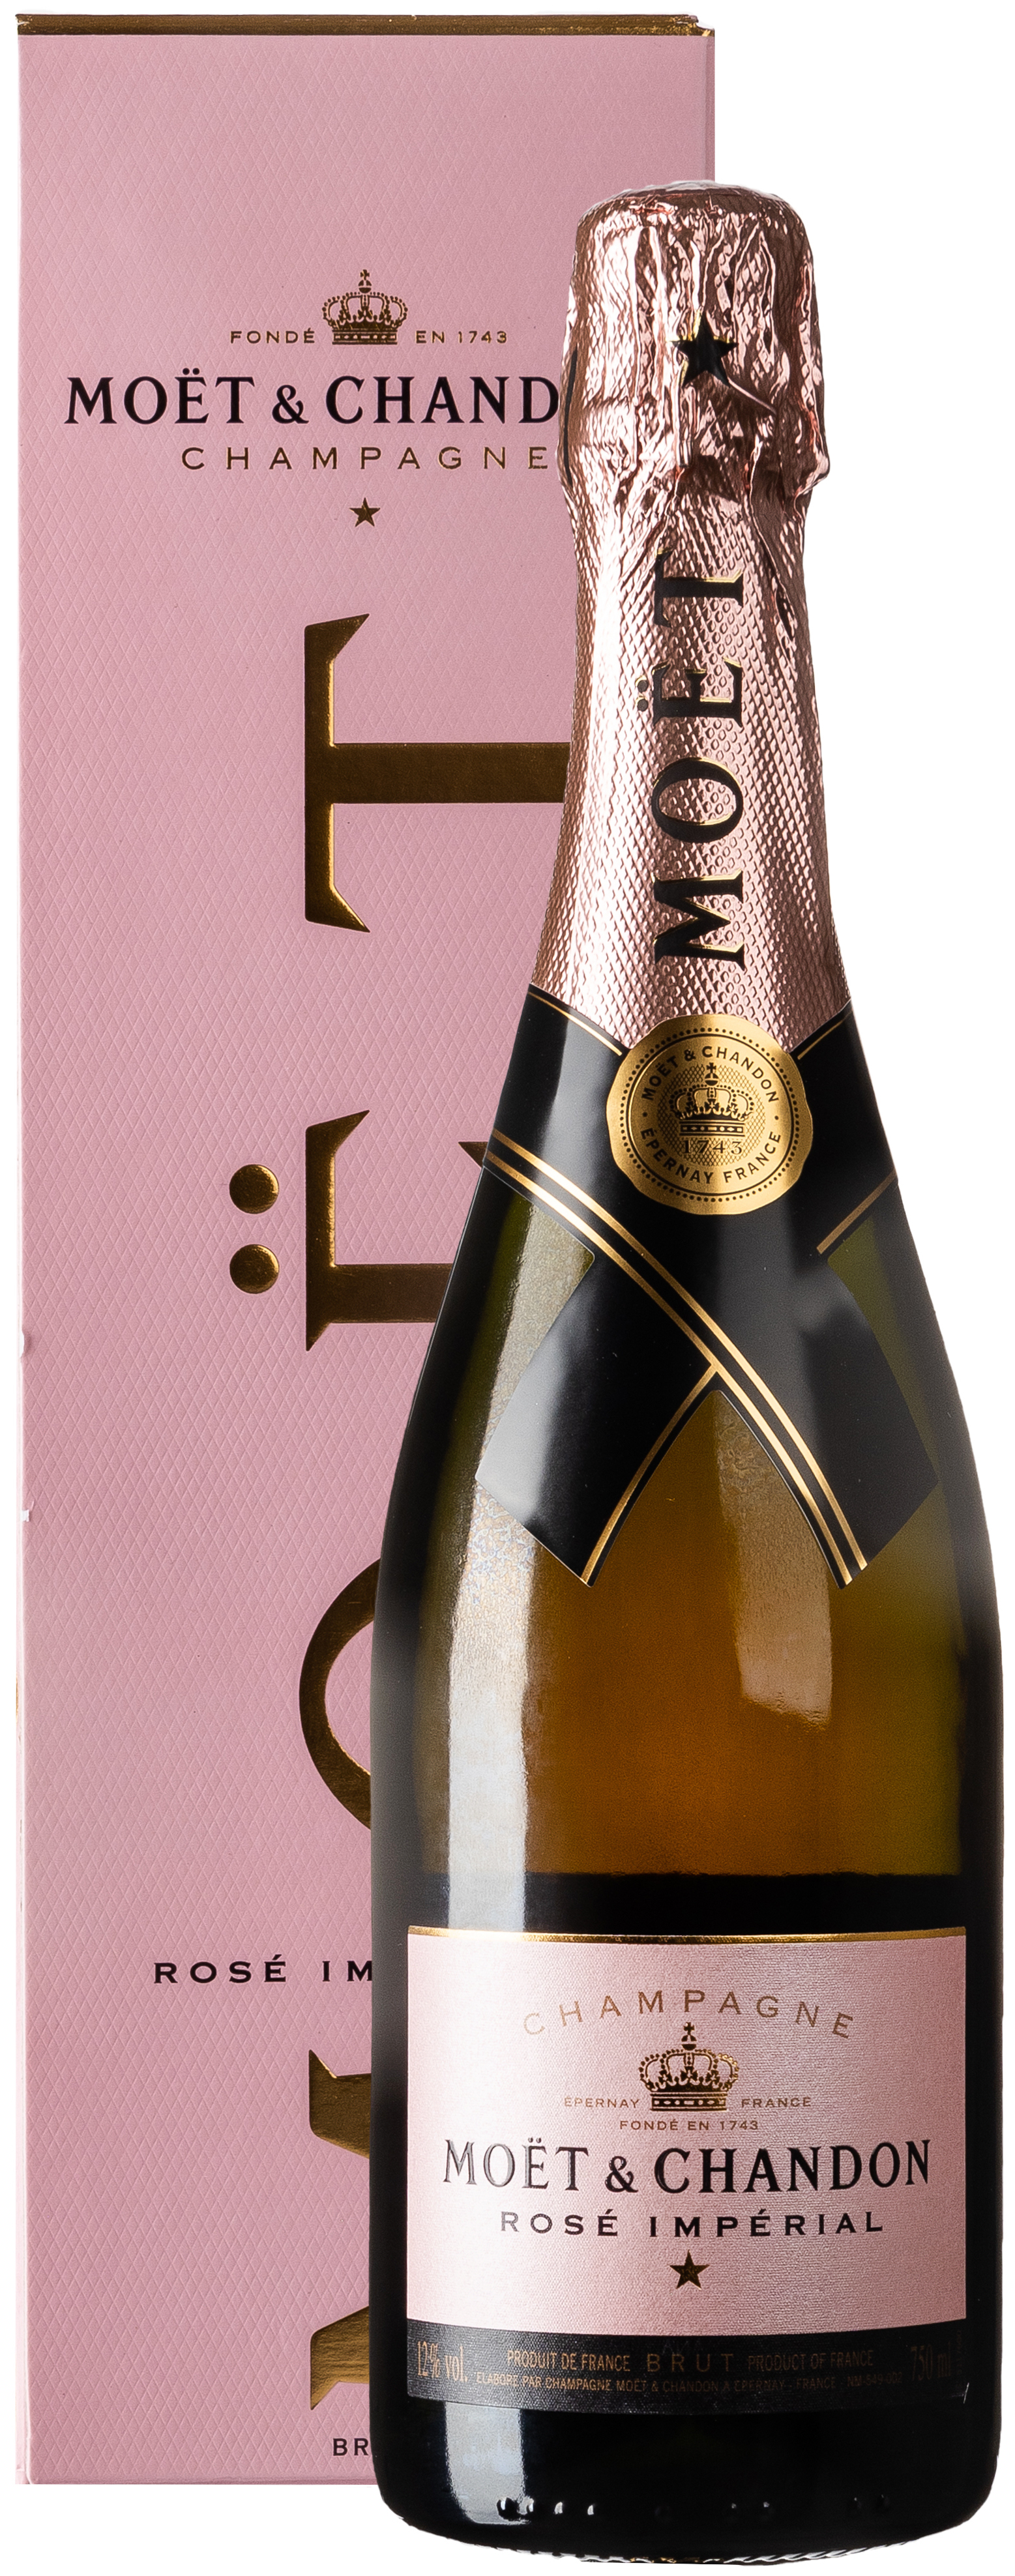 Moët & Chandon Champagne Rosé Impérial 12% vol. 0,75L